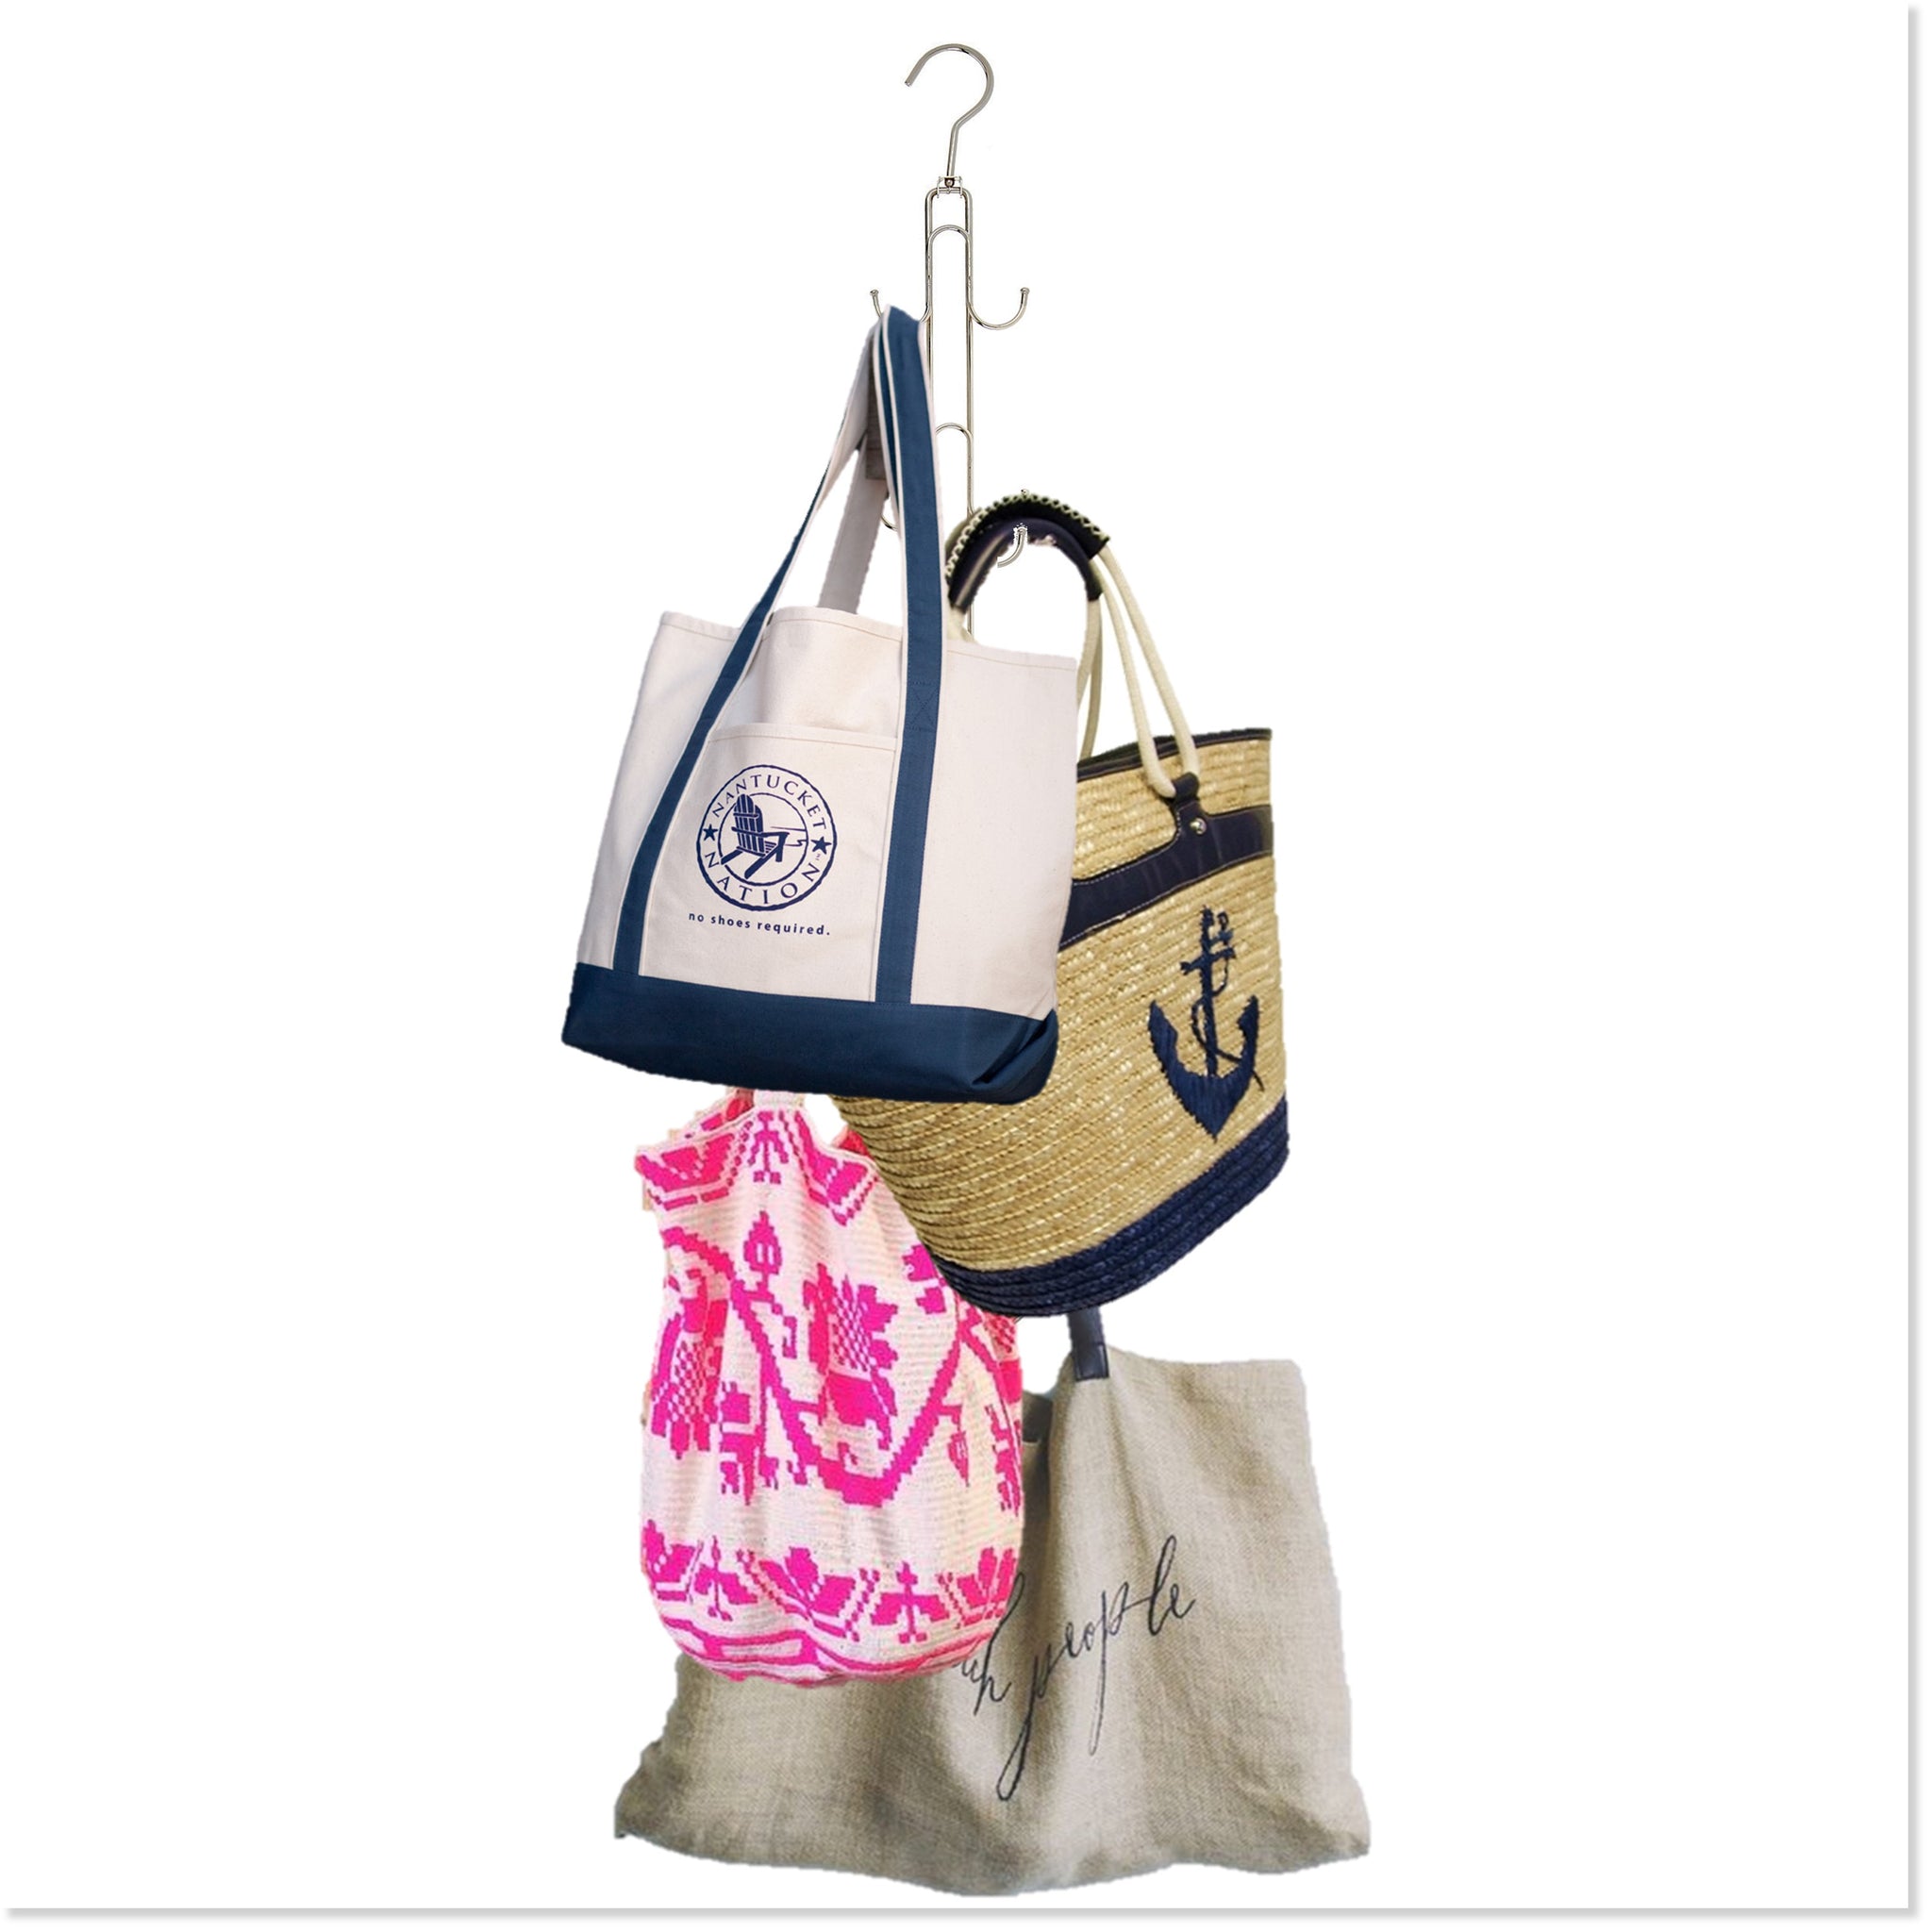 Purse Hanger Arched Hook PP Bag Hanger Handbag Tote Bag Rack